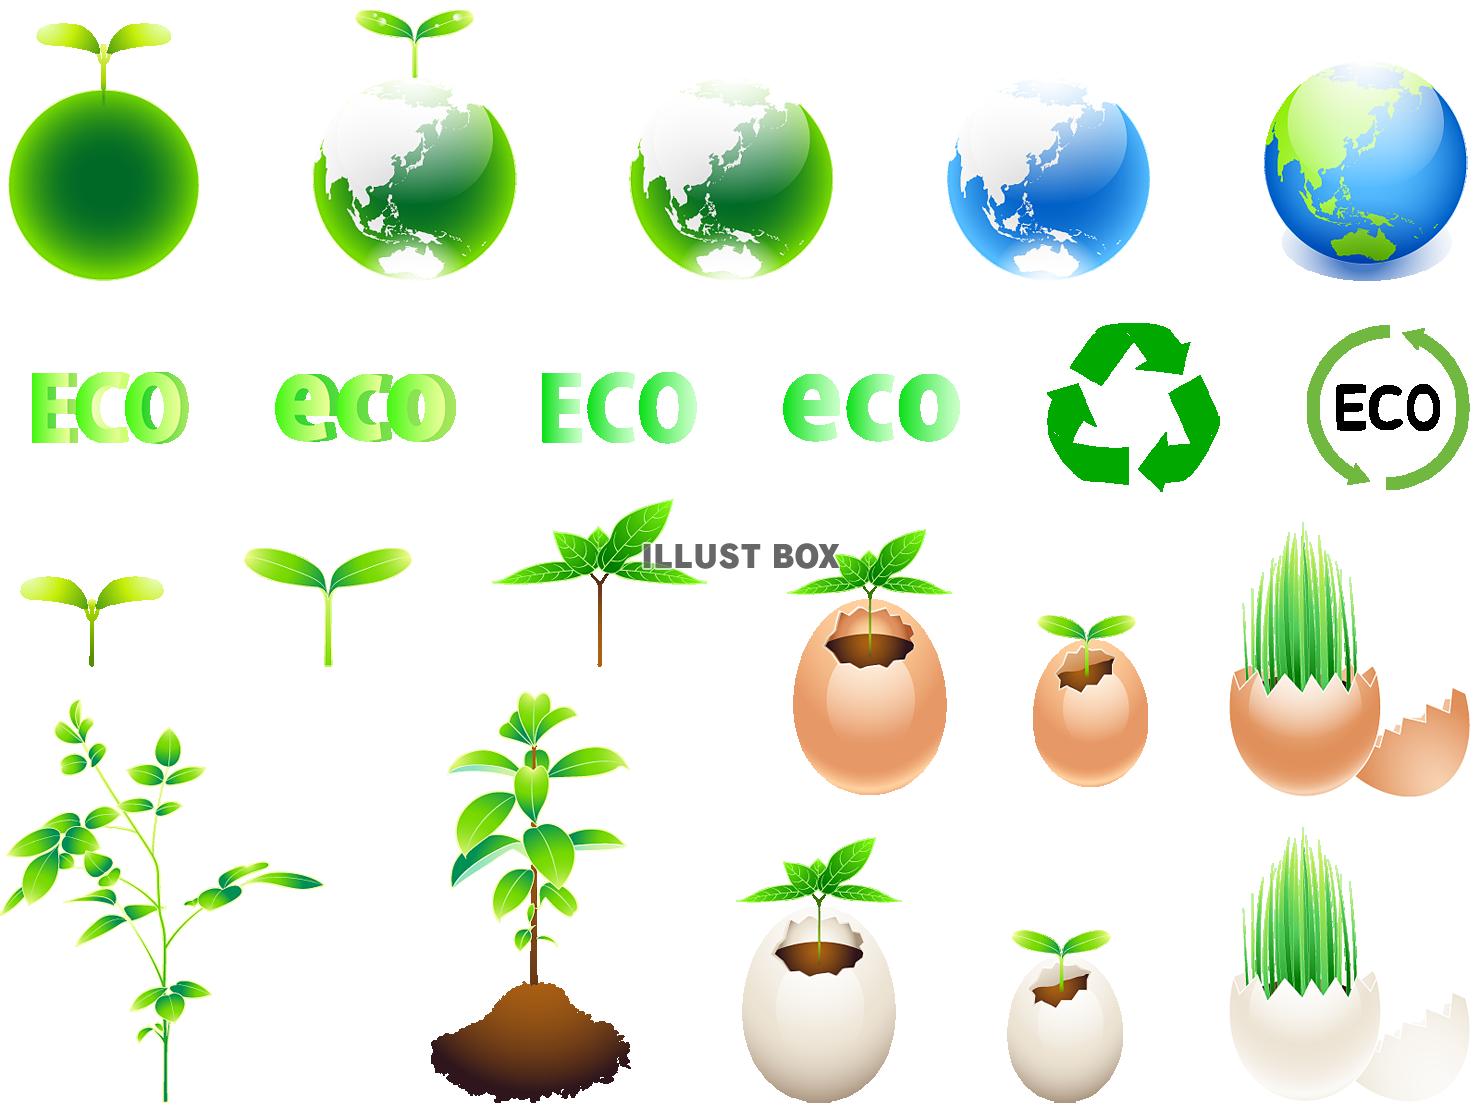 エコ 地球 卵 草 植物 リサイクル イラスト無料